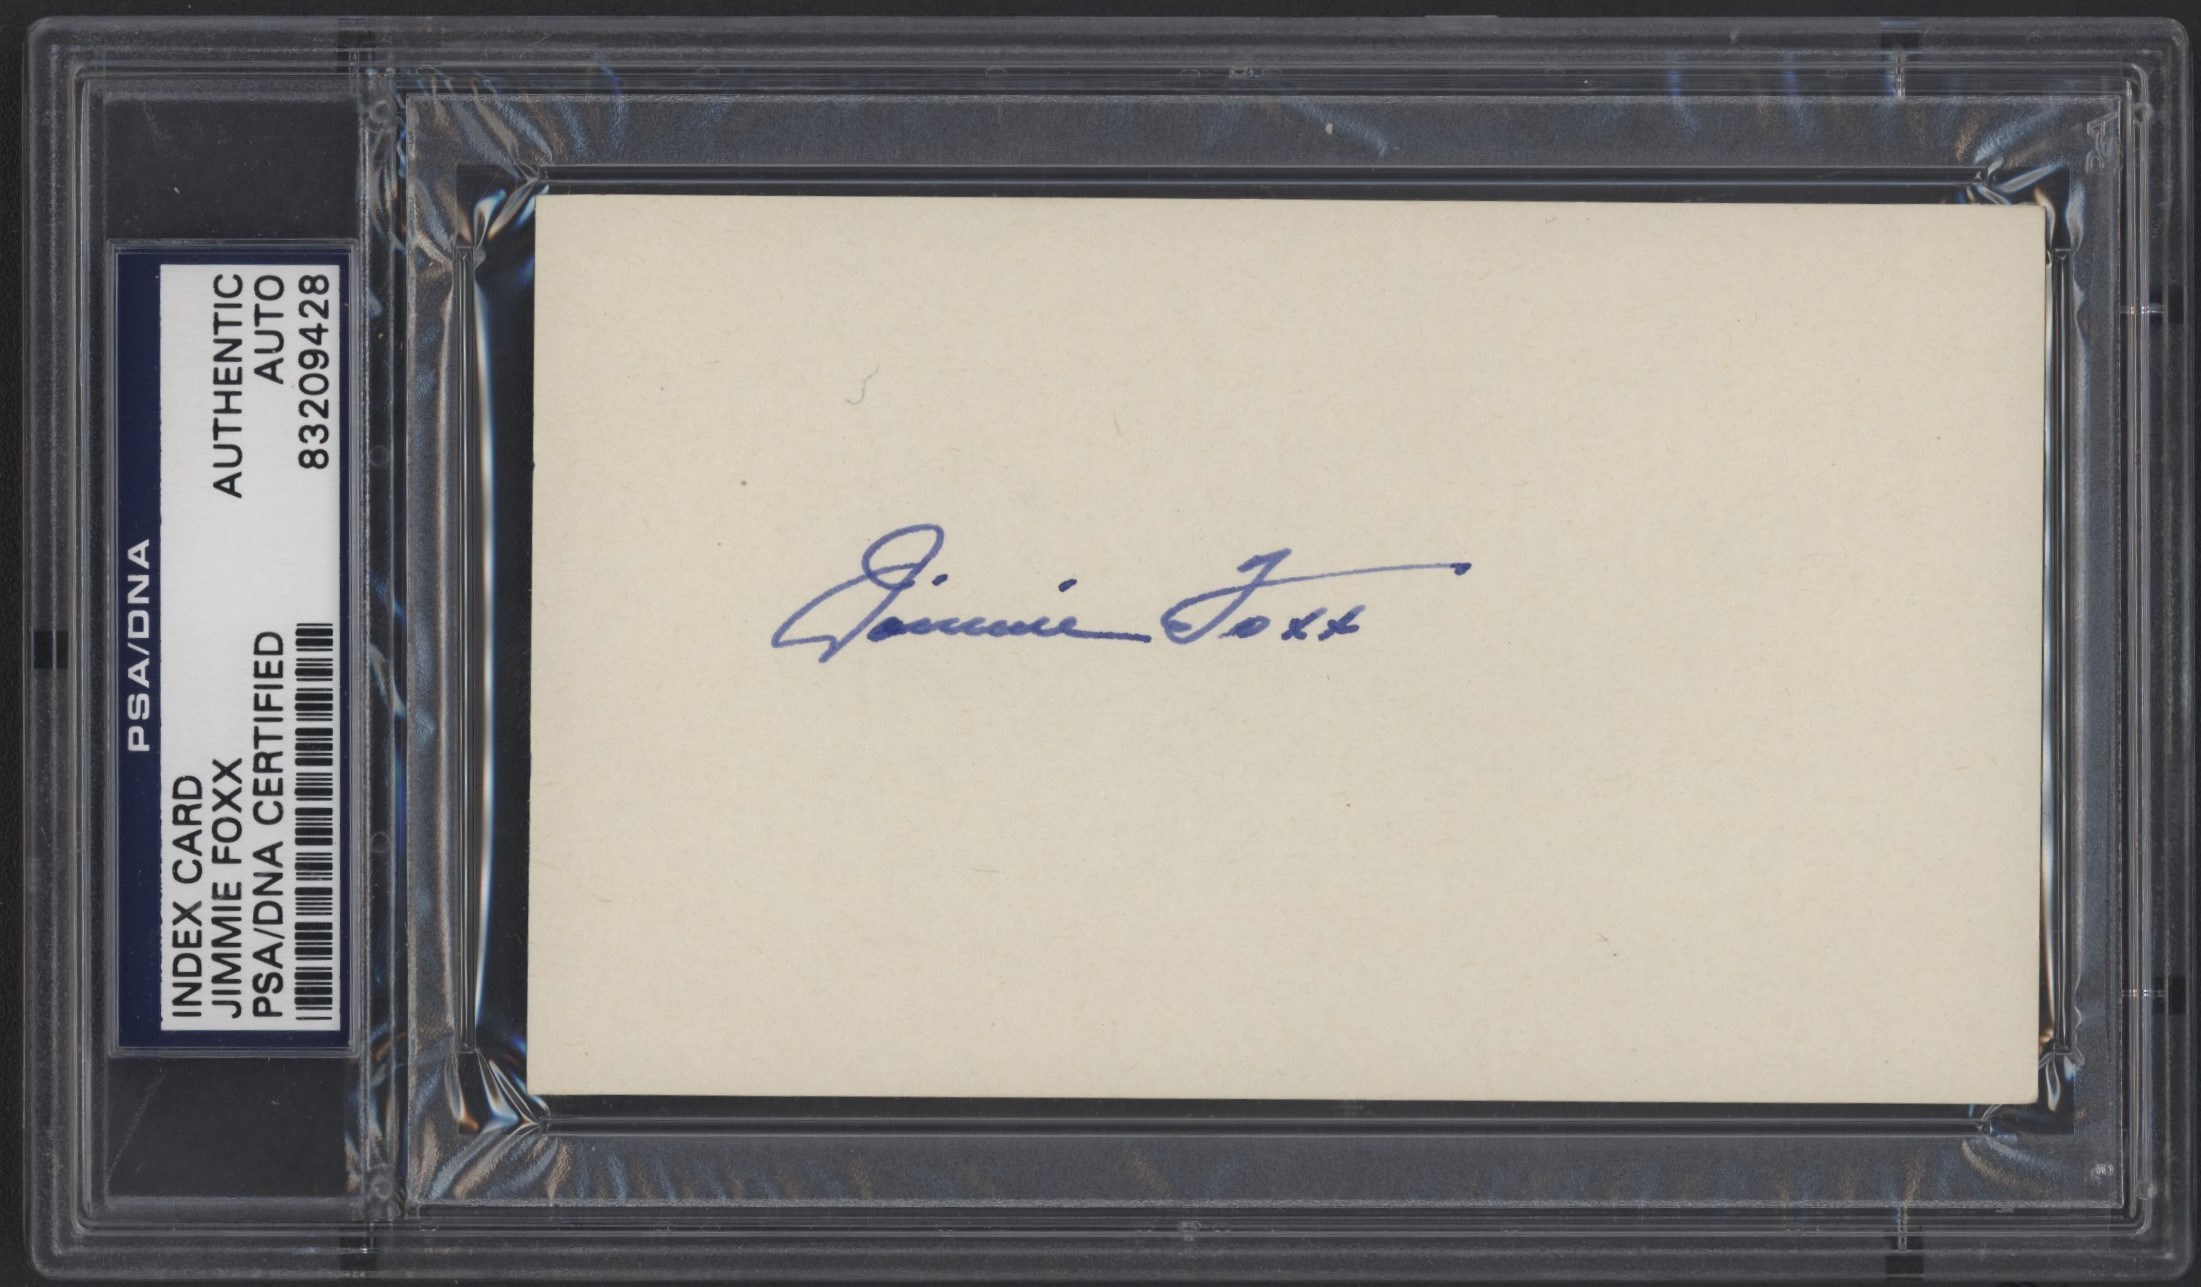 Baseball Autographs - High Grade Jimmie Foxx Signed Index Card (PSA/DNA)